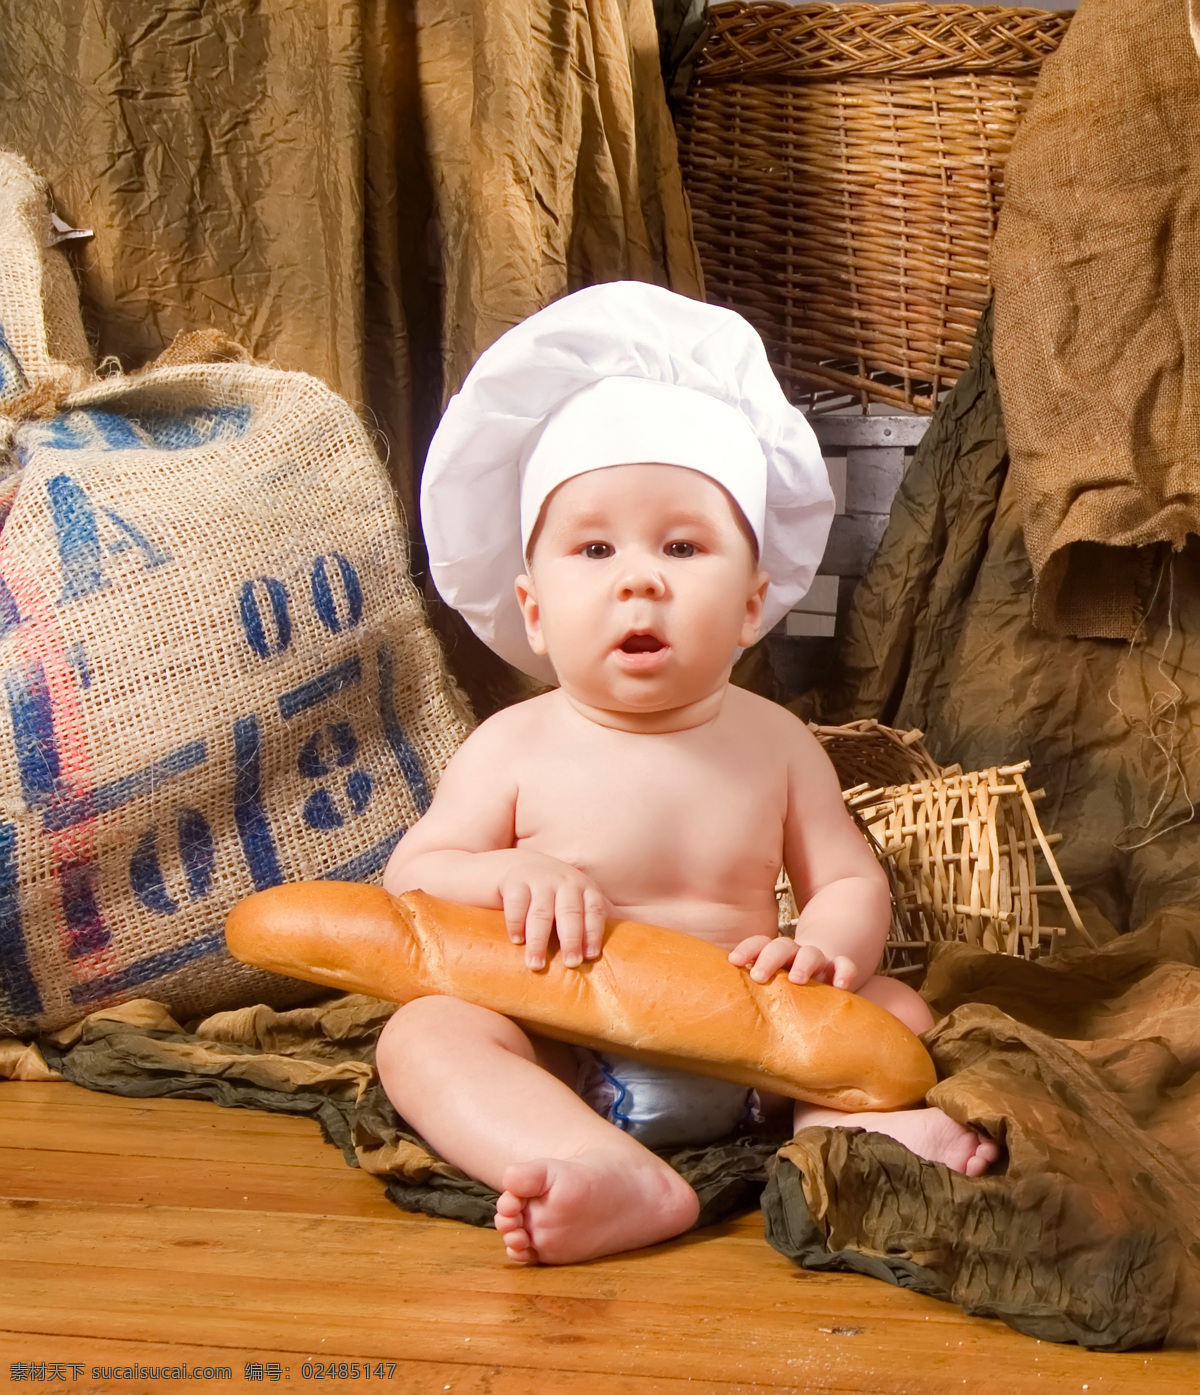 戴 厨师 帽 面包 外国 宝宝 外国宝宝 木板 厨师帽 麻袋 人物摄影 宝宝图片 人物图片